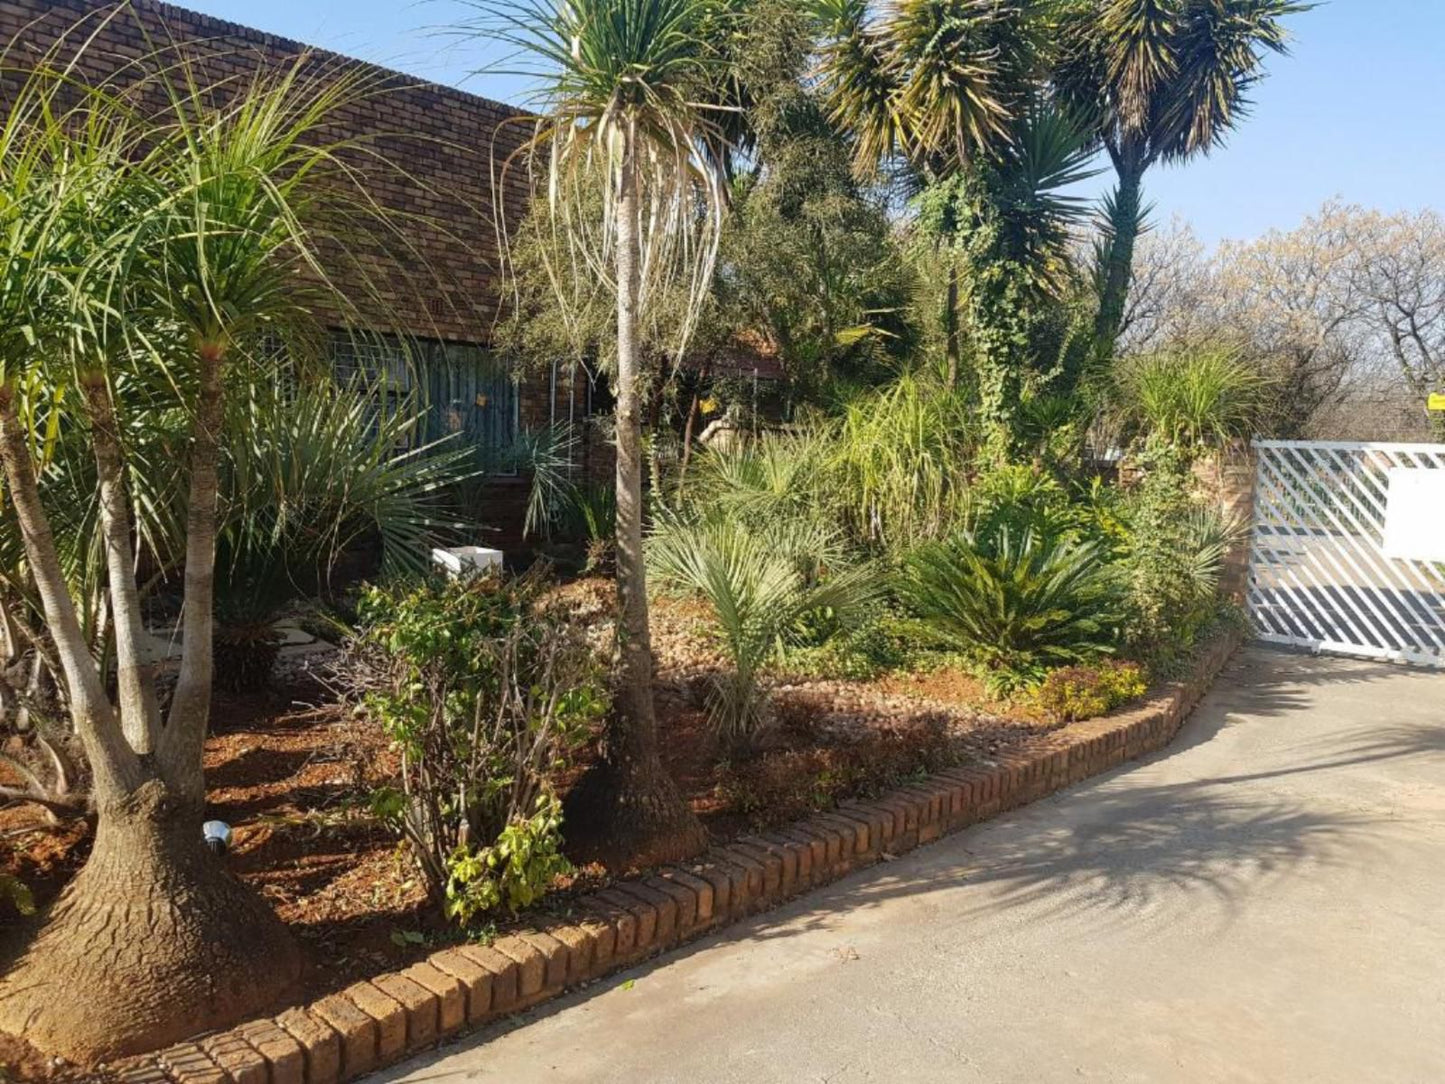 Royal Villa Guesthouse Brakpan Johannesburg Gauteng South Africa Palm Tree, Plant, Nature, Wood, Garden